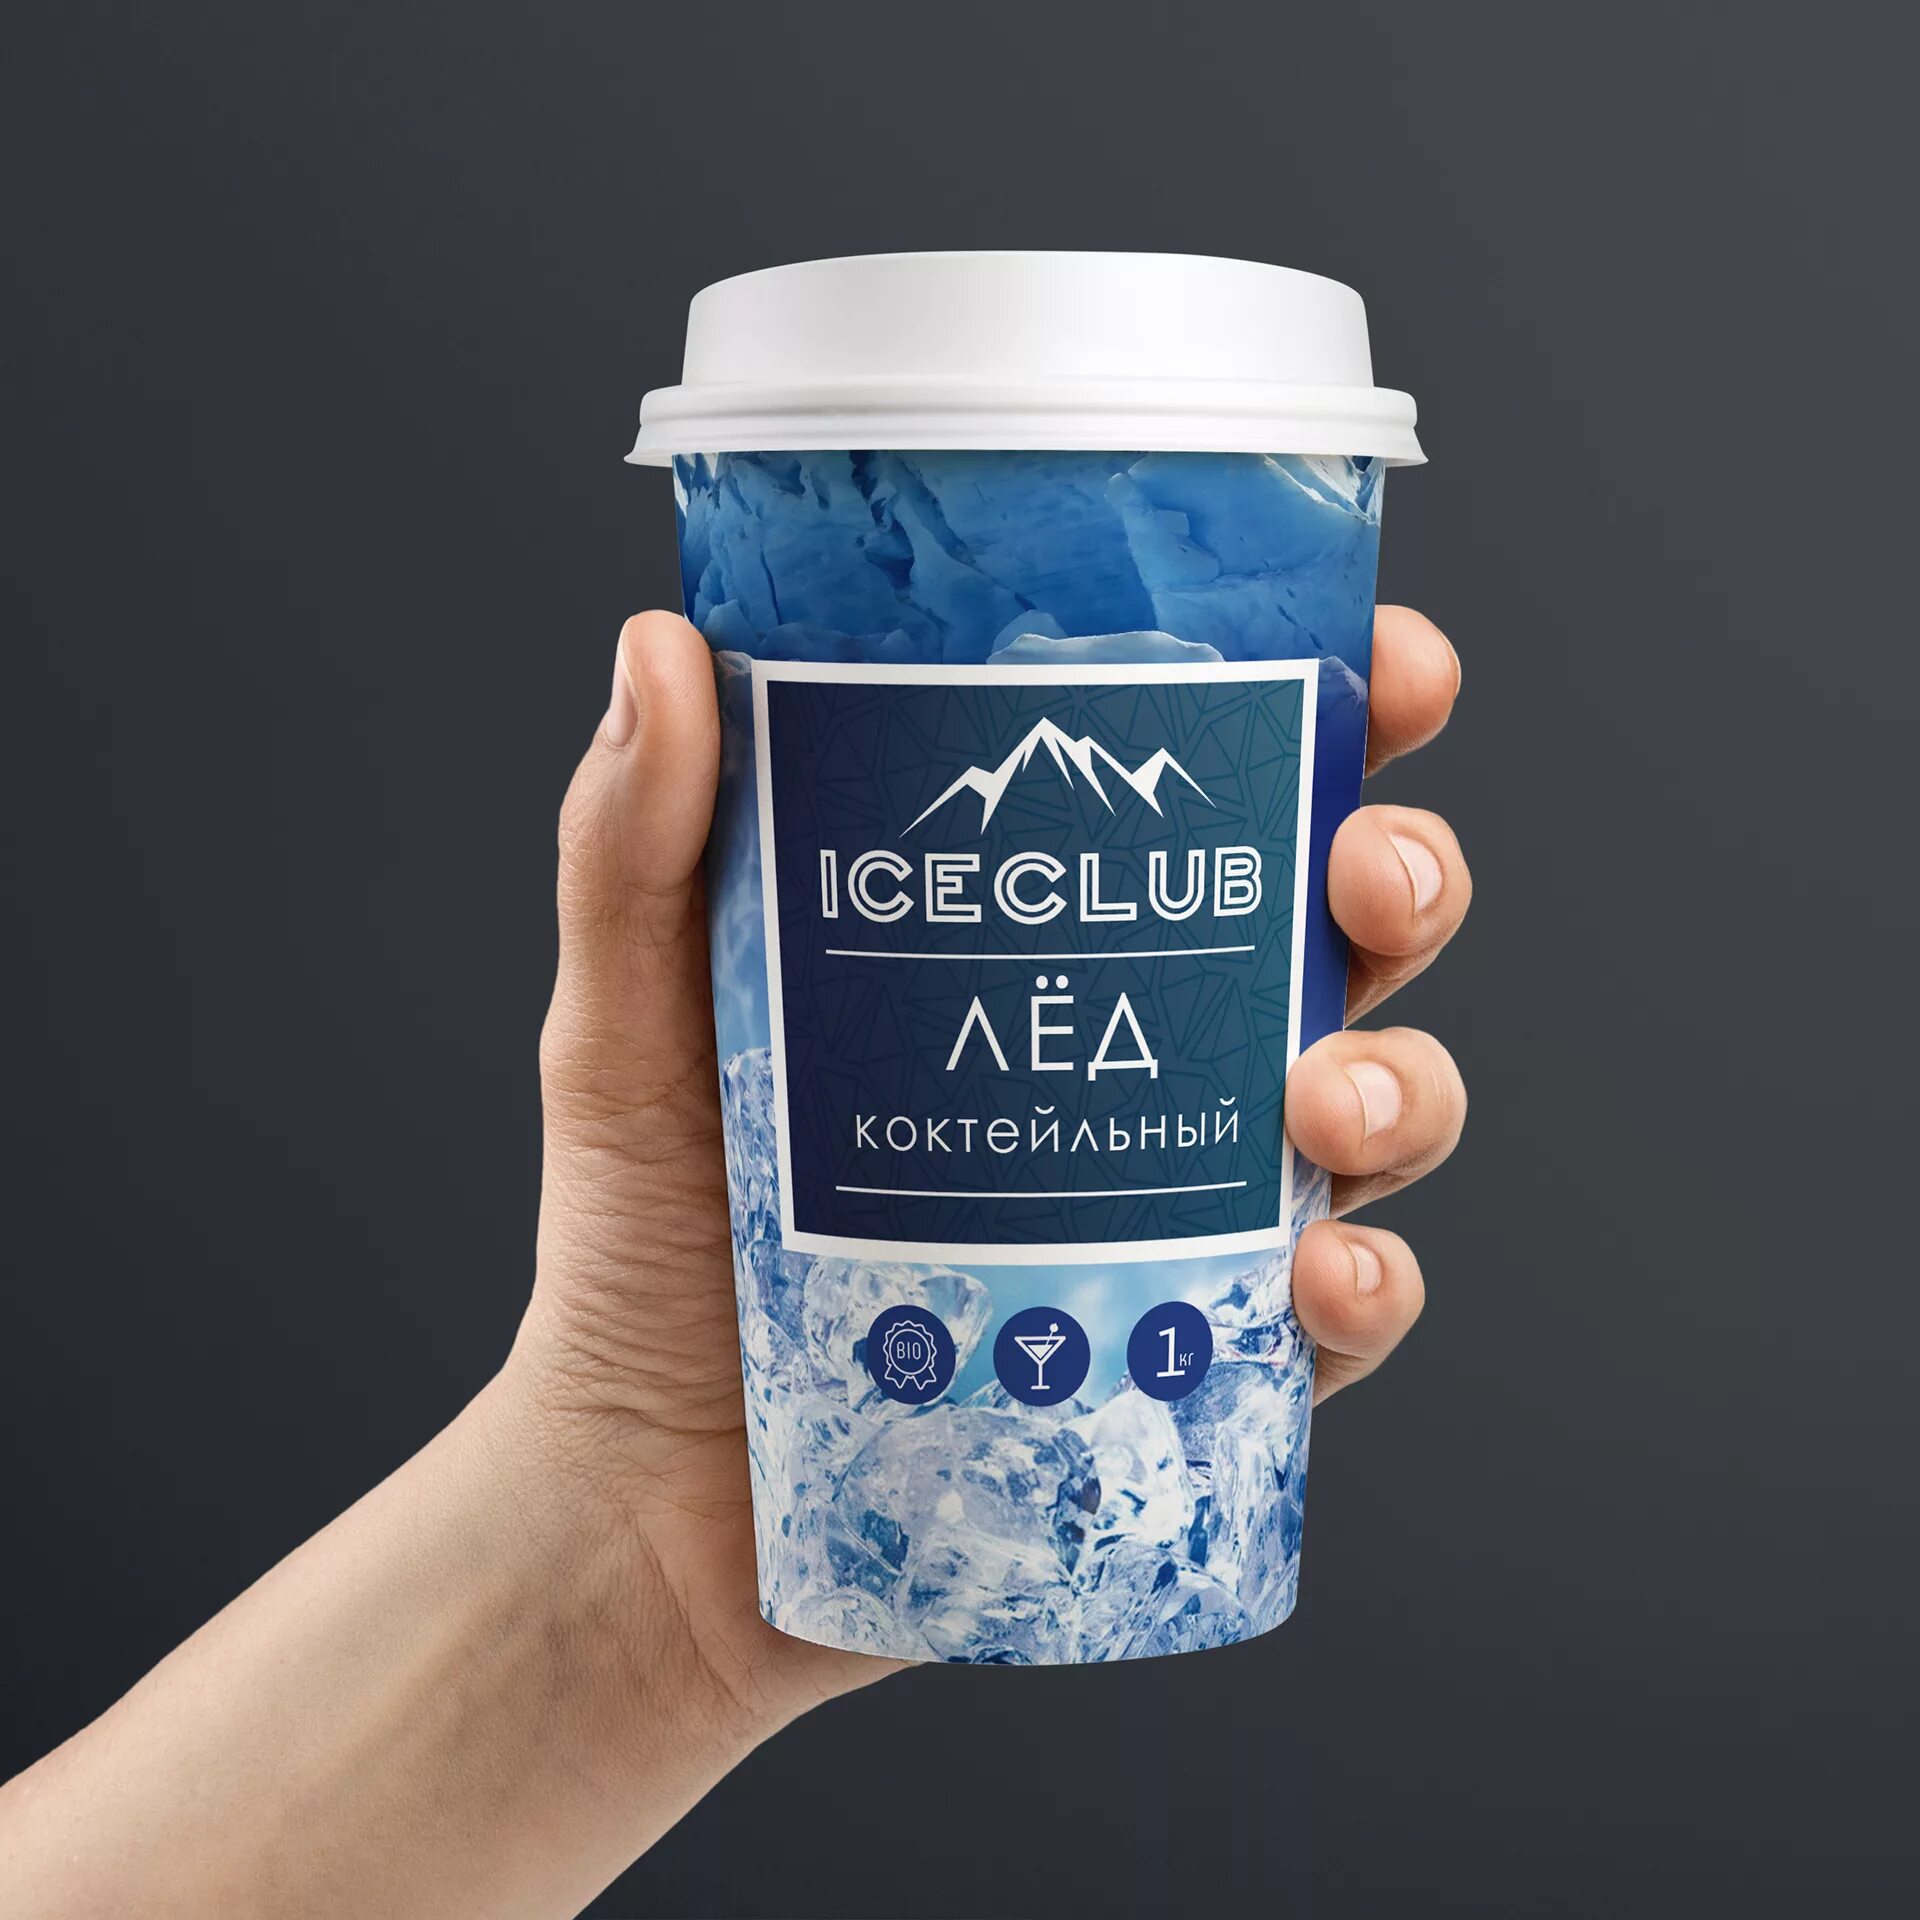 Купить лед для коктейлей. Упаковка льда. Упаковка для льда с логотипом. Коктейль со льдом. Коктейльный лед упаковка.